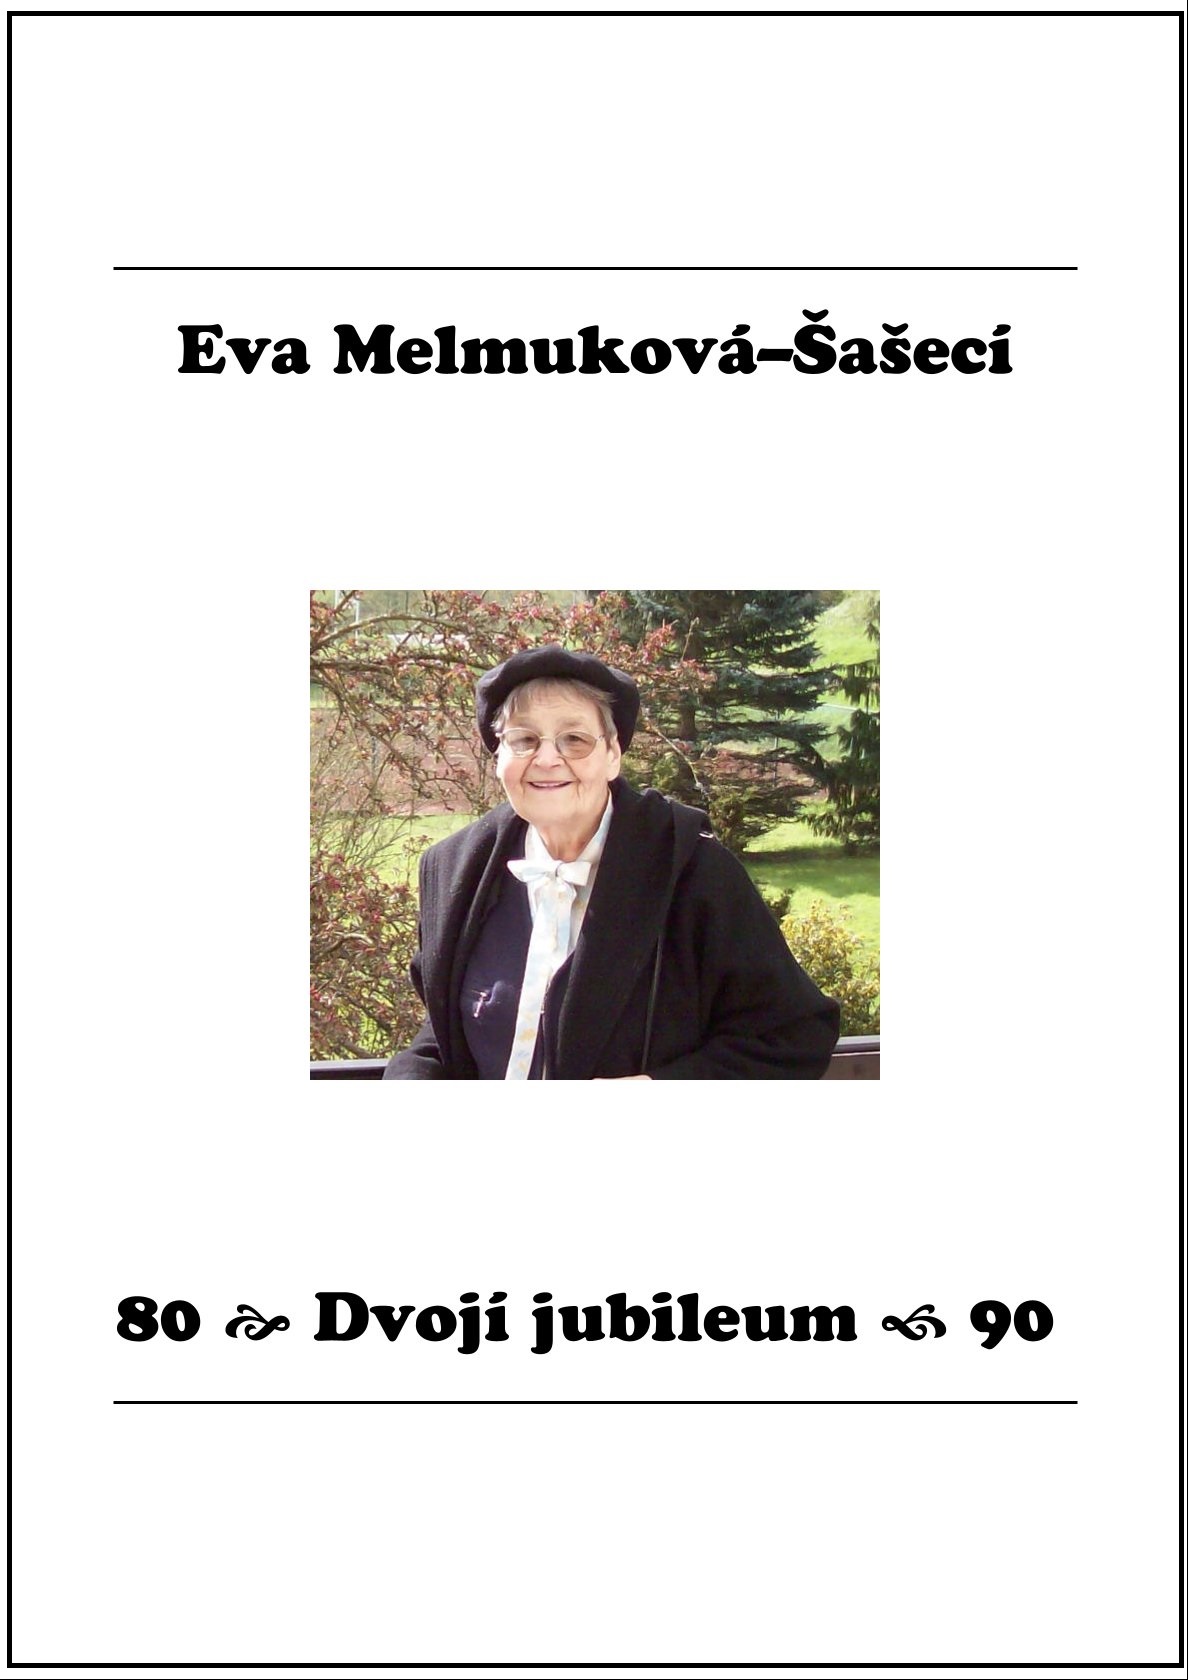 Náhled knihy: Eva Melmuková-Šašecí – Dvojí jubileum 80 + 90